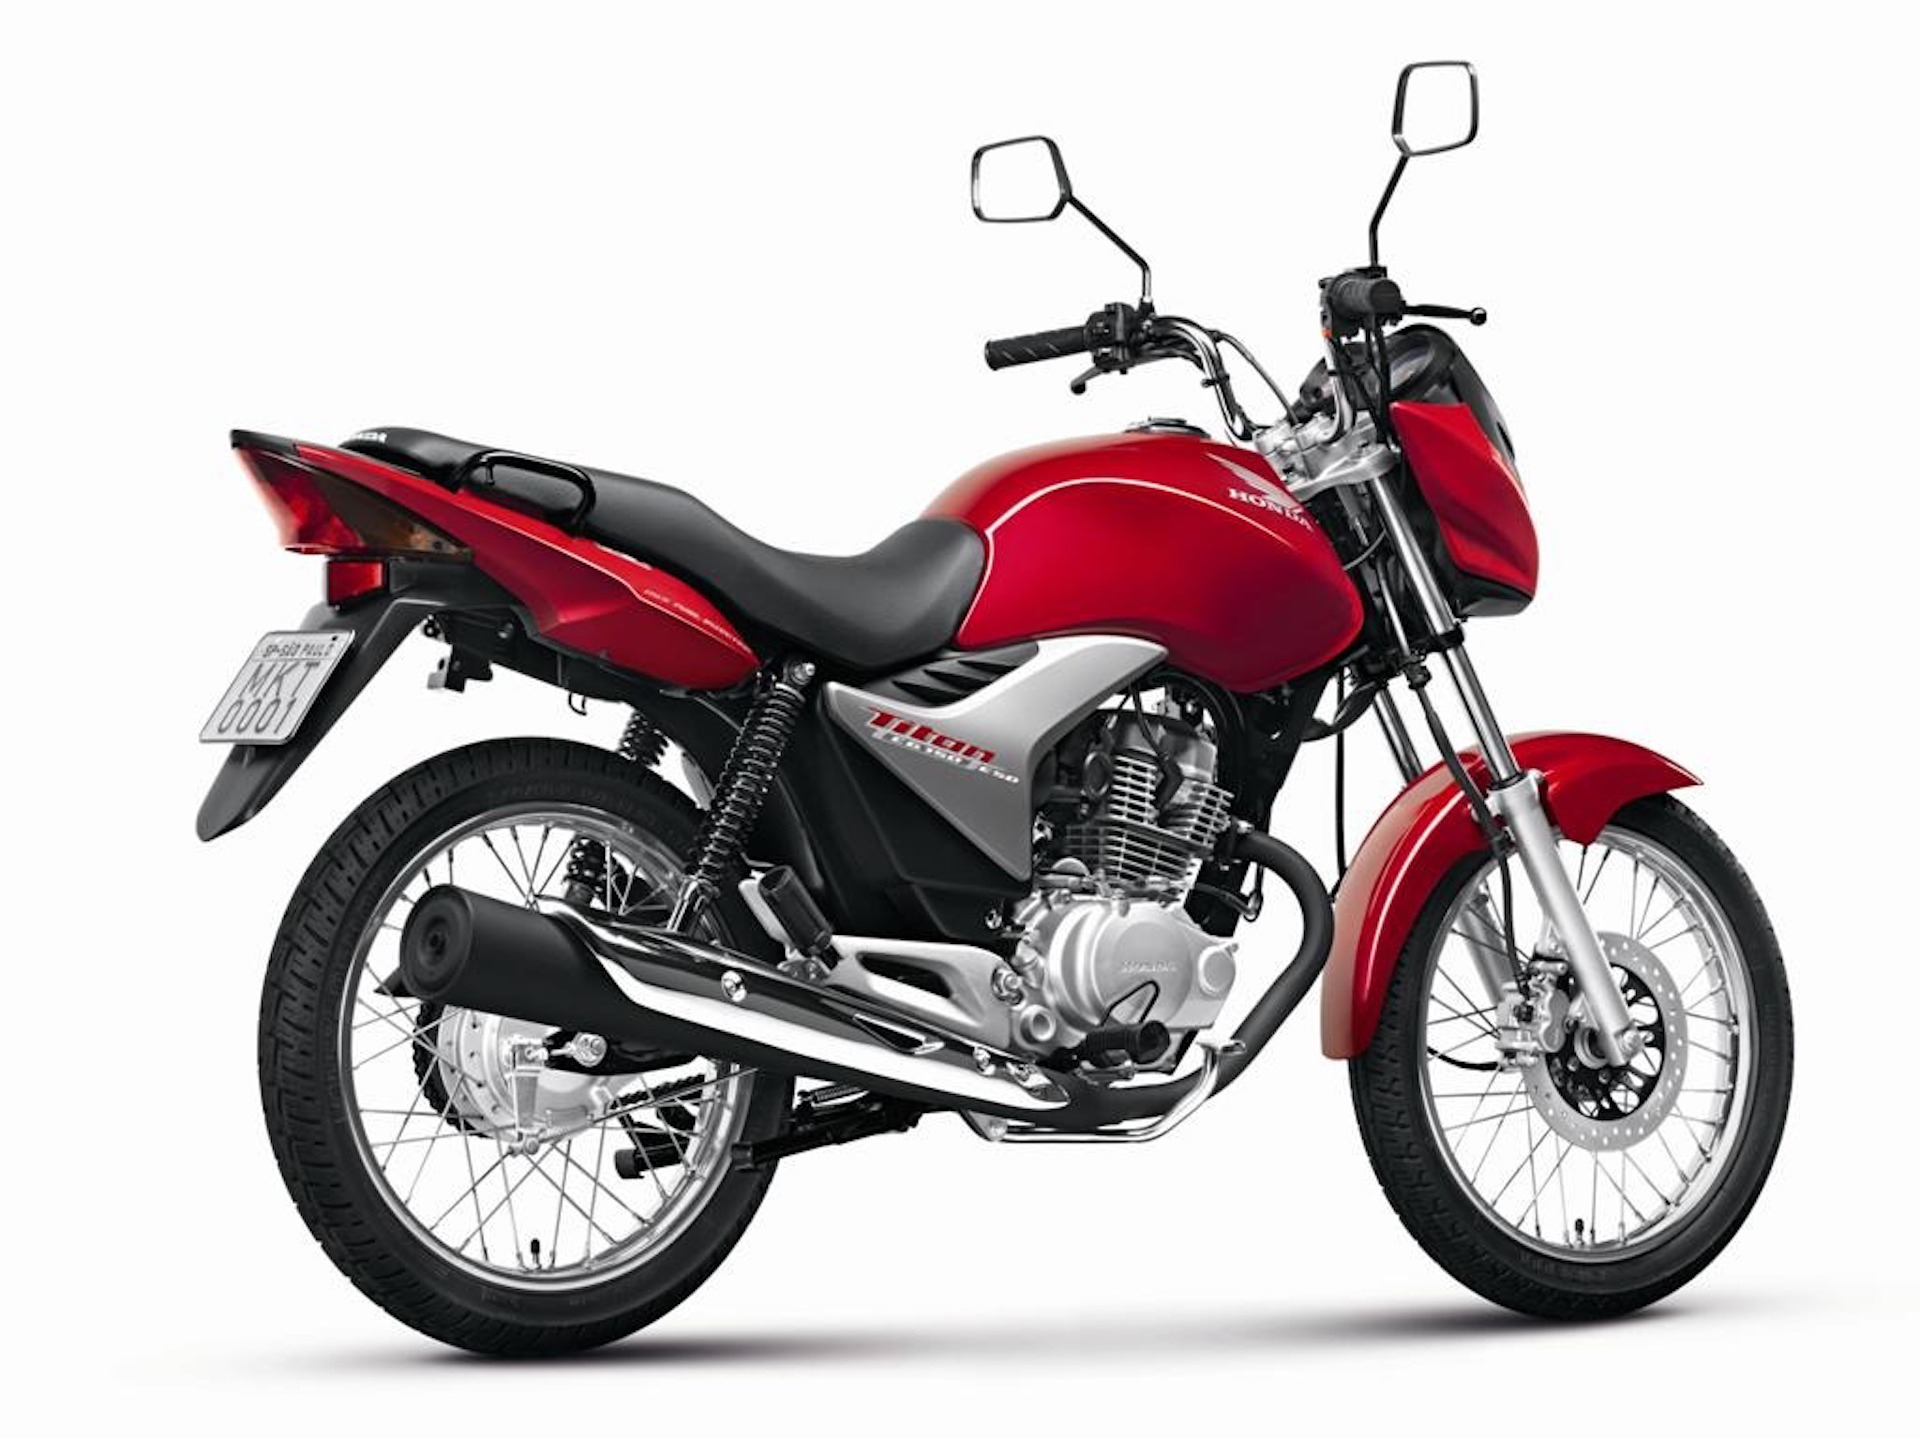 A Honda CG 150 é um ícone no segmento de motocicletas, reconhecida por sua confiabilidade, economia e praticidade.